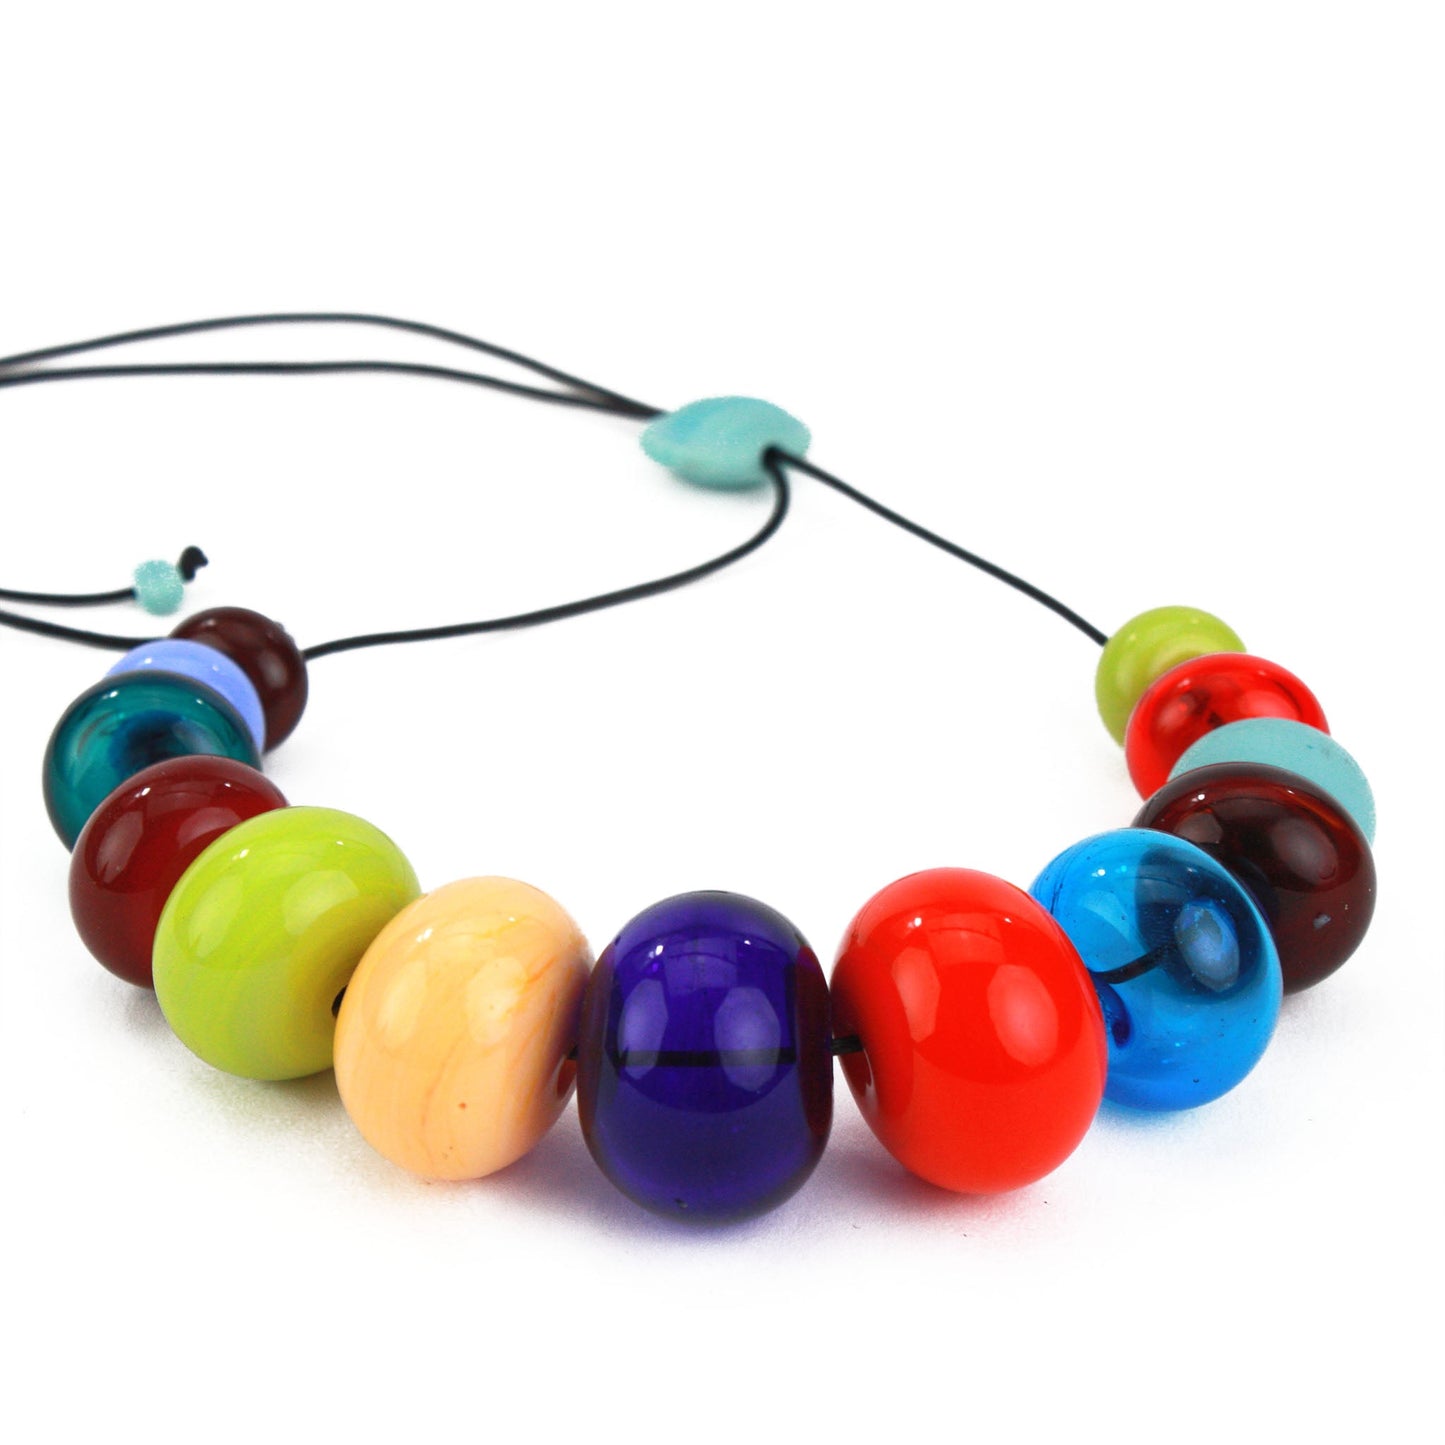 13 bead Bubble necklace - multi-colored